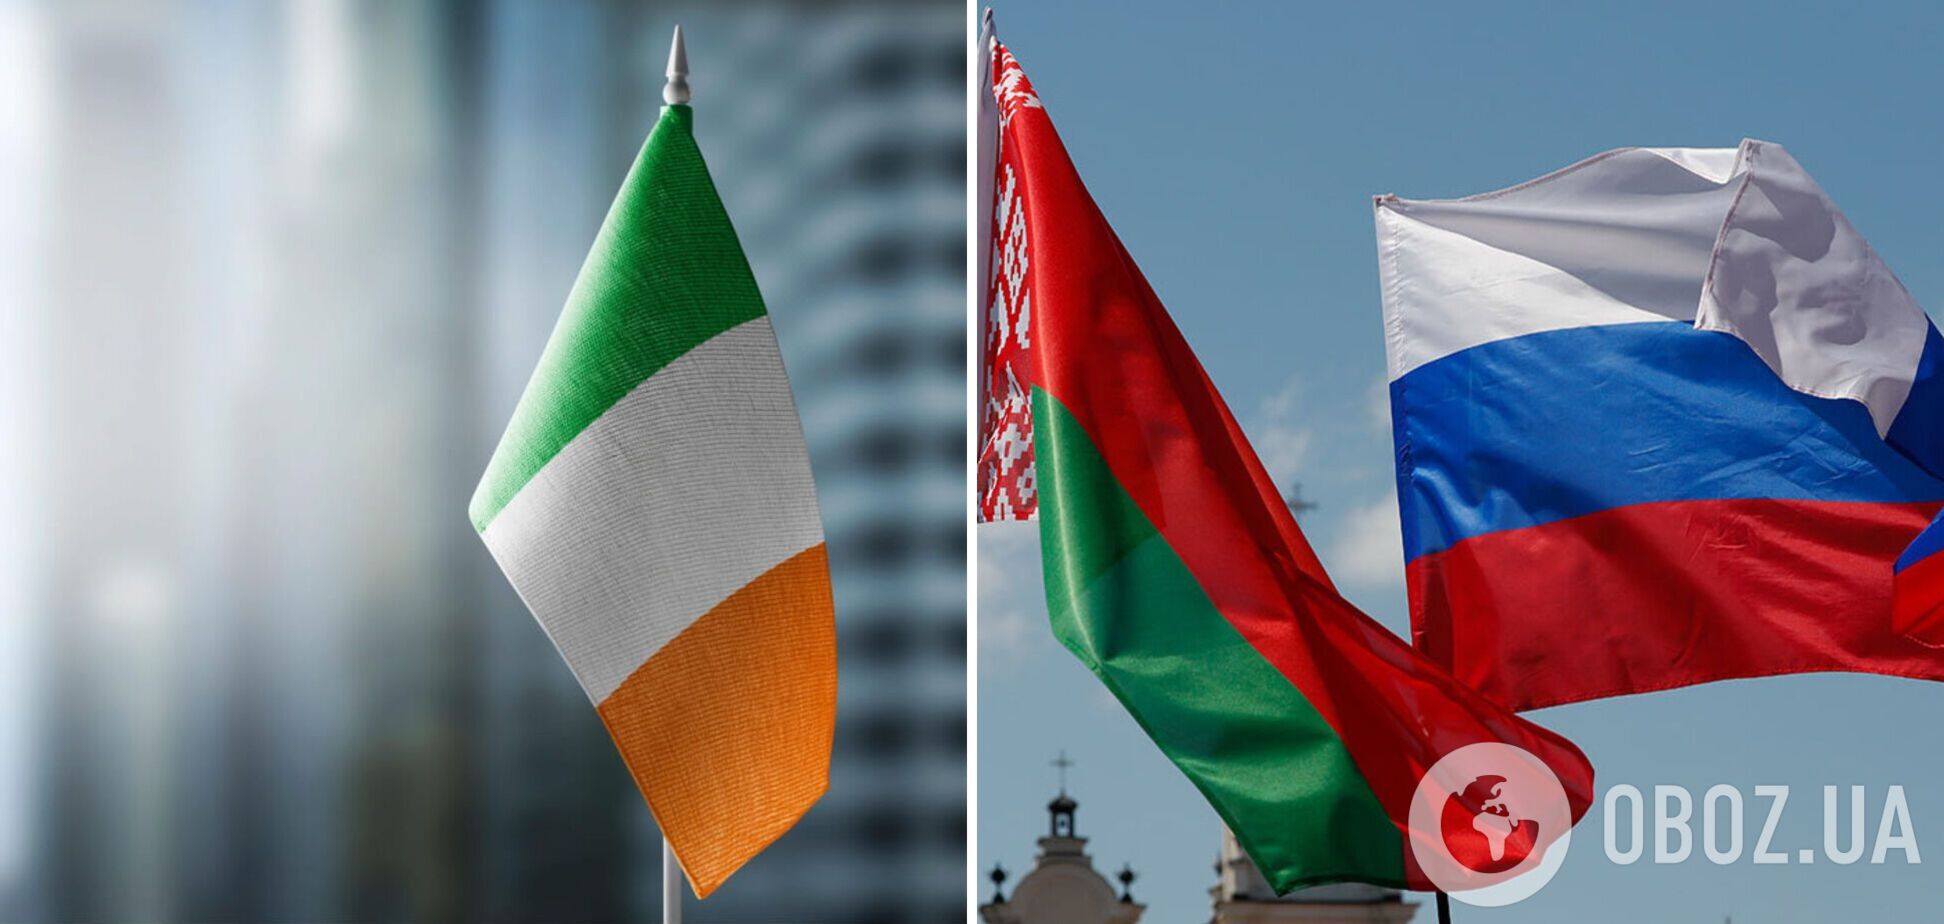 В Ирландии отменили краткосрочный безвизовый въезд для граждан РФ и Беларуси